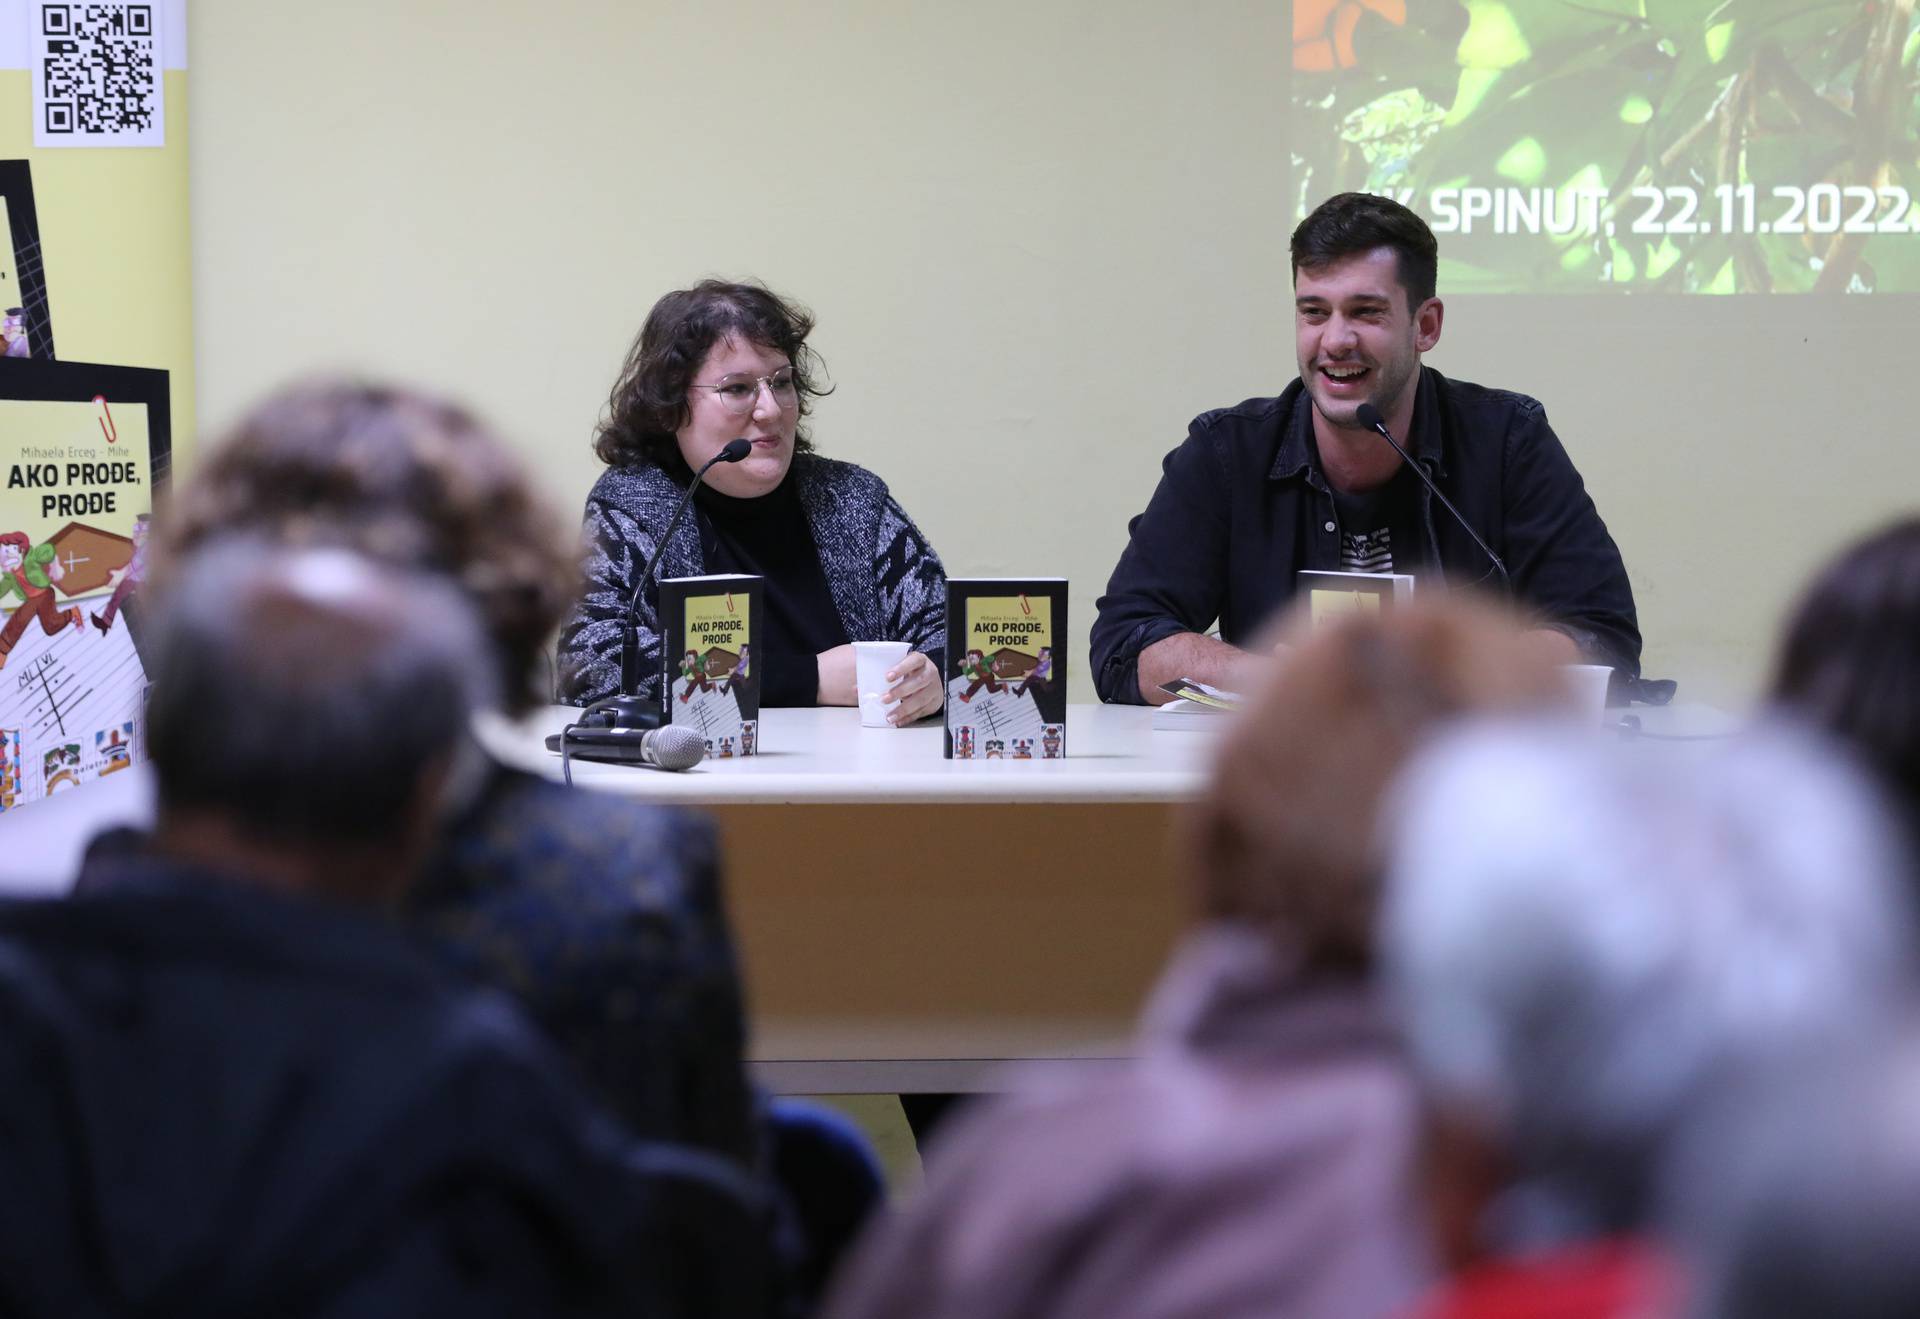 Split: Predstavljanje knjige "Ako prođe, prođe" autorice Mihaele Erceg